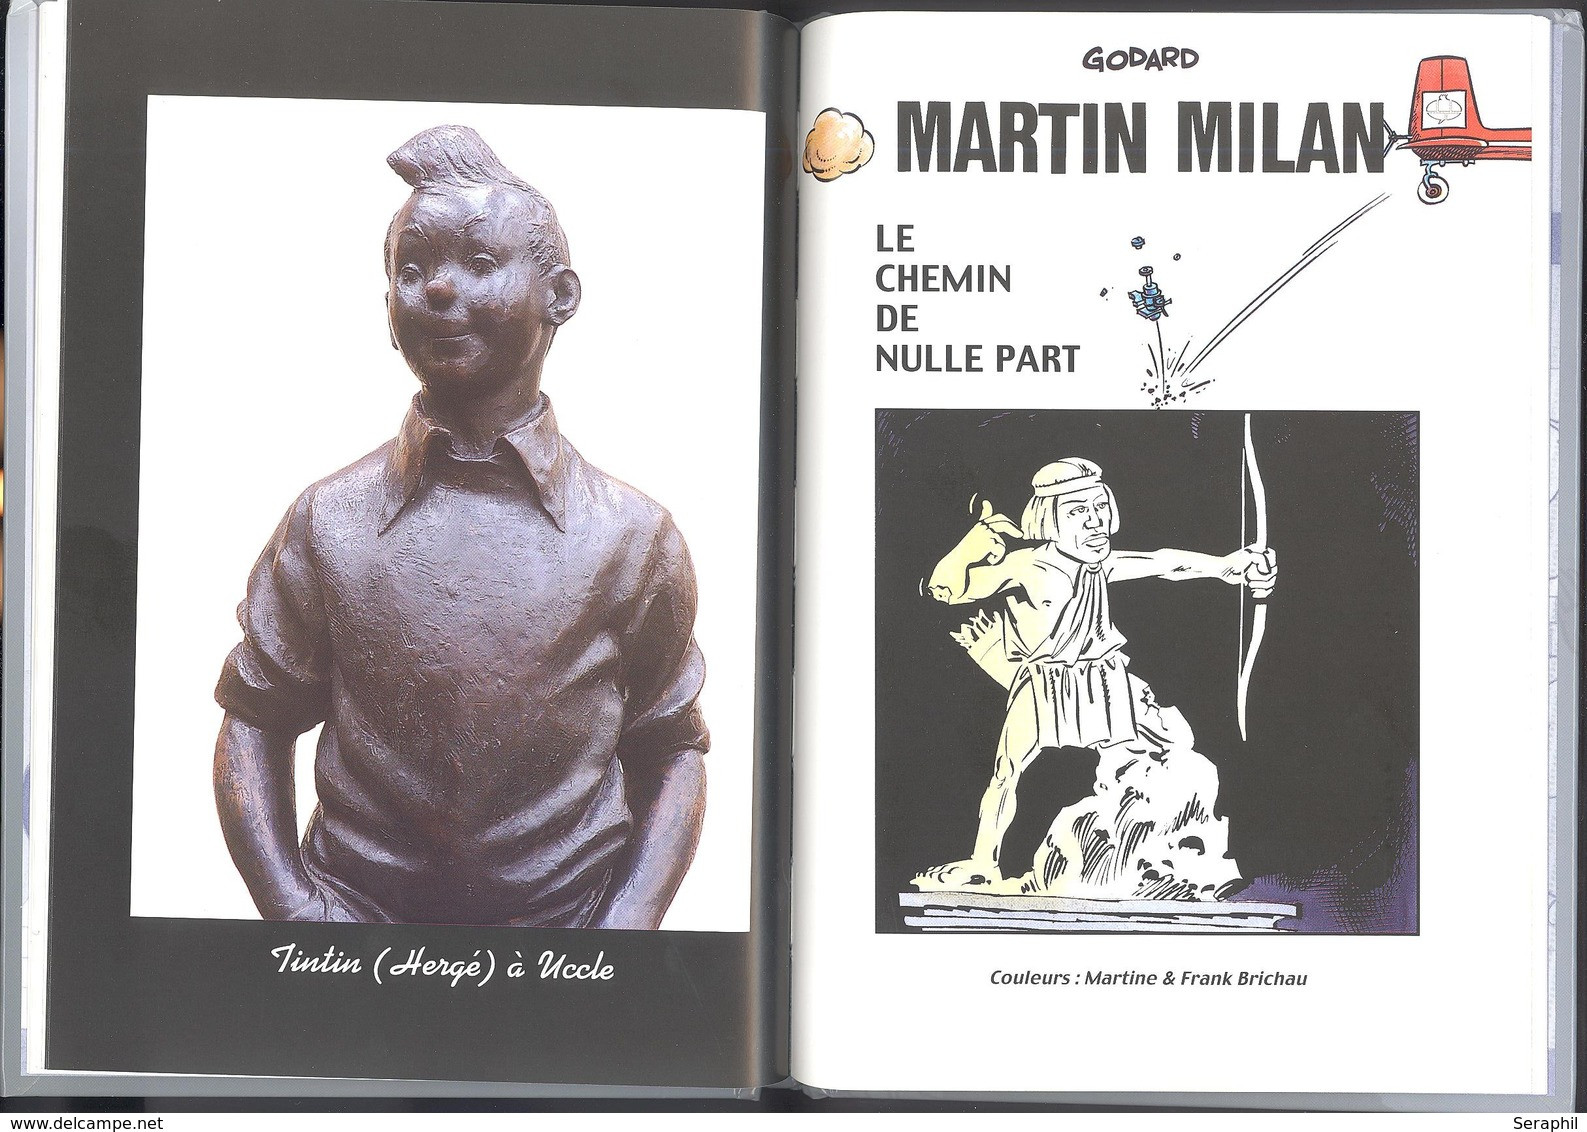 Livre Bande Dessinée -  Le Sculpteur Ne Manque Pas D'adresse - Avec Tintin - Timbres N° 3194/98 - 2003 - FR - Philabédés